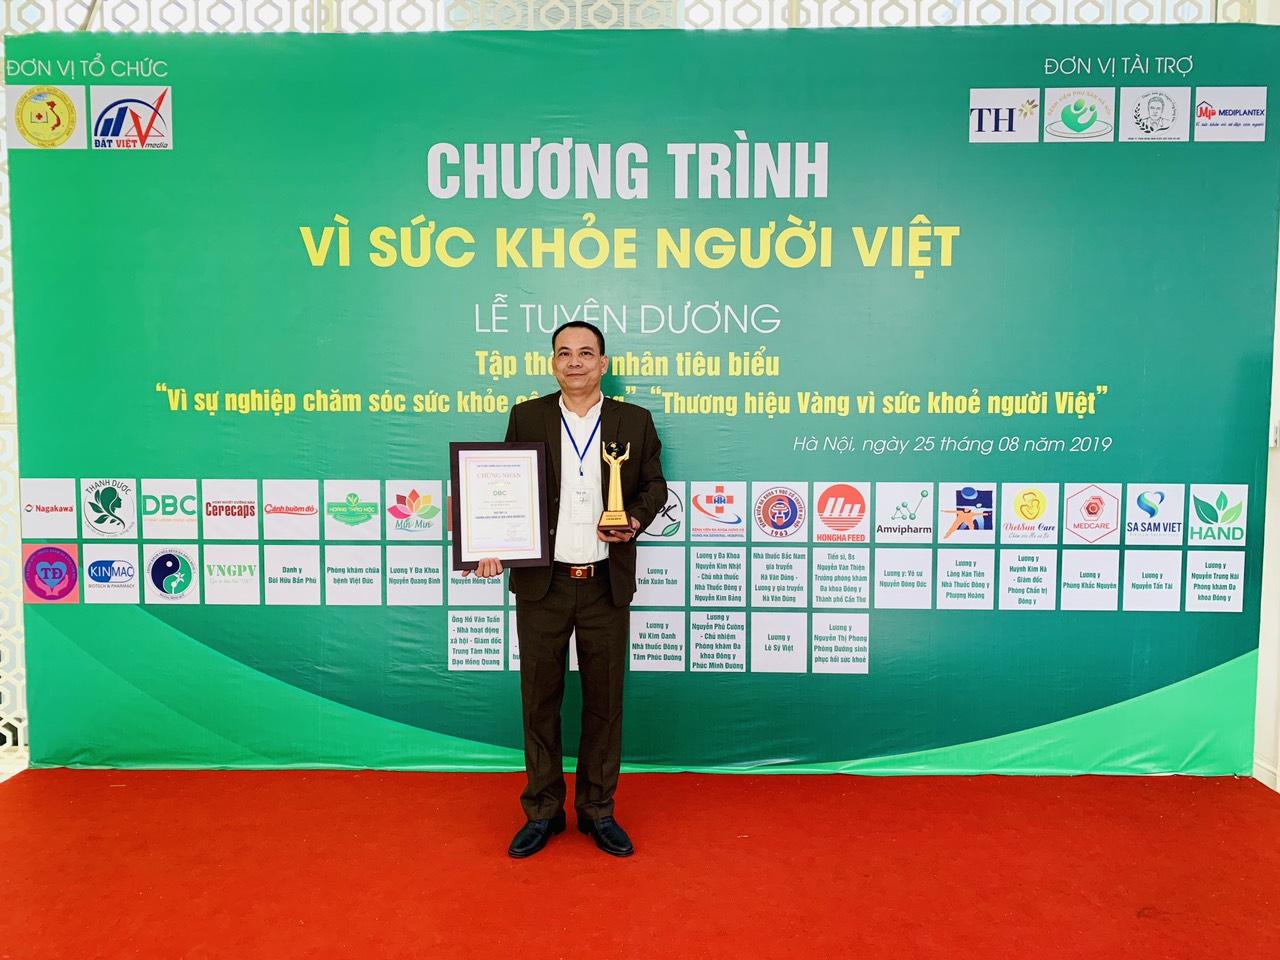 Top 10 "Thương hiệu vàng -  Vì sức khỏe người Việt"